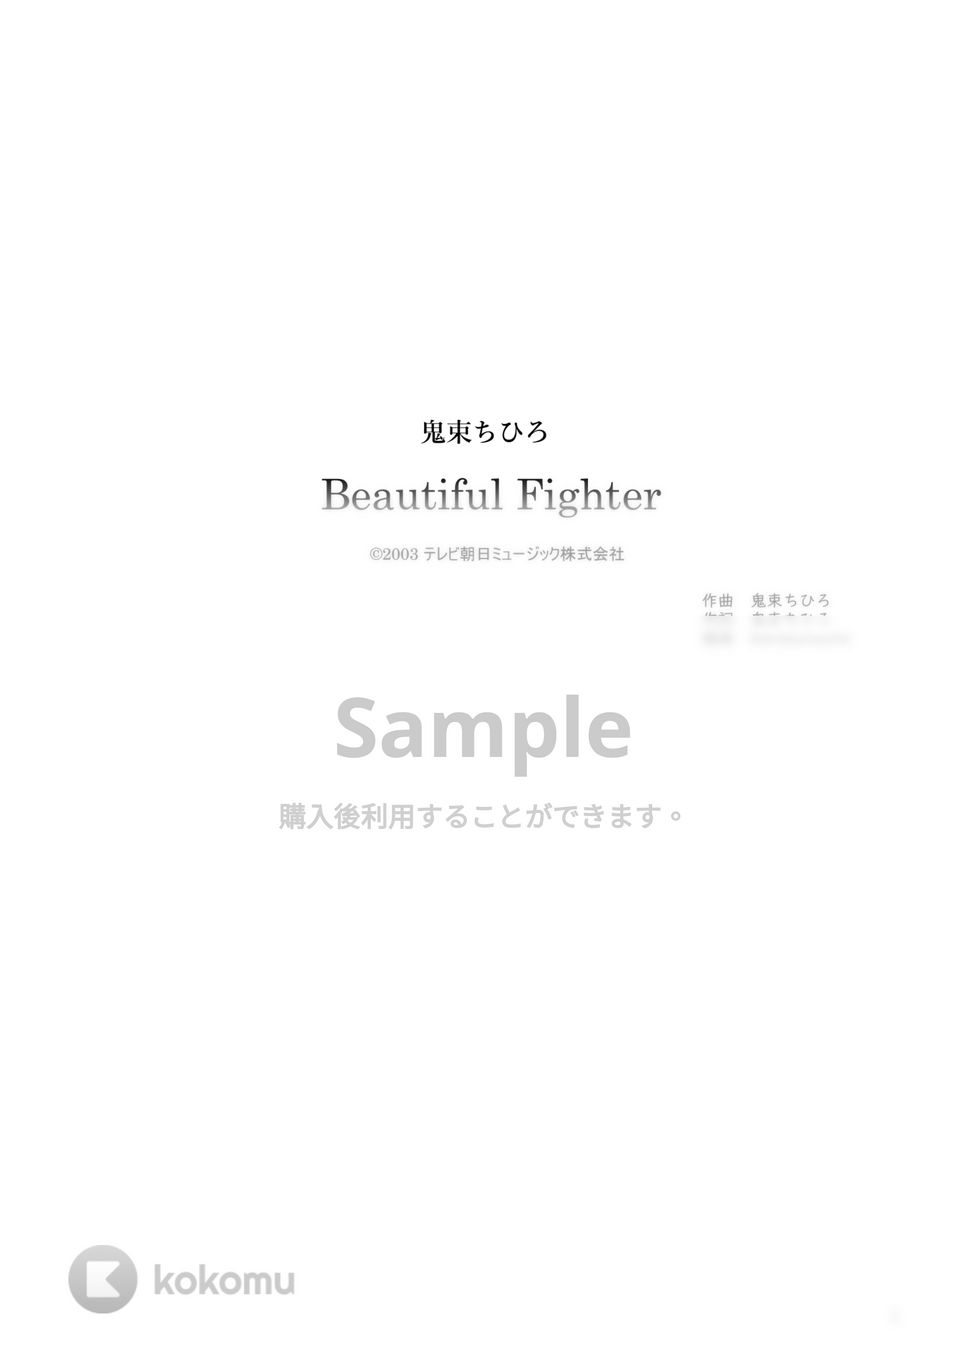 鬼束ちひろ - Beautiful Fighter (ピアノ弾き語り / 歌詞付き / コード付き) by karasunouta